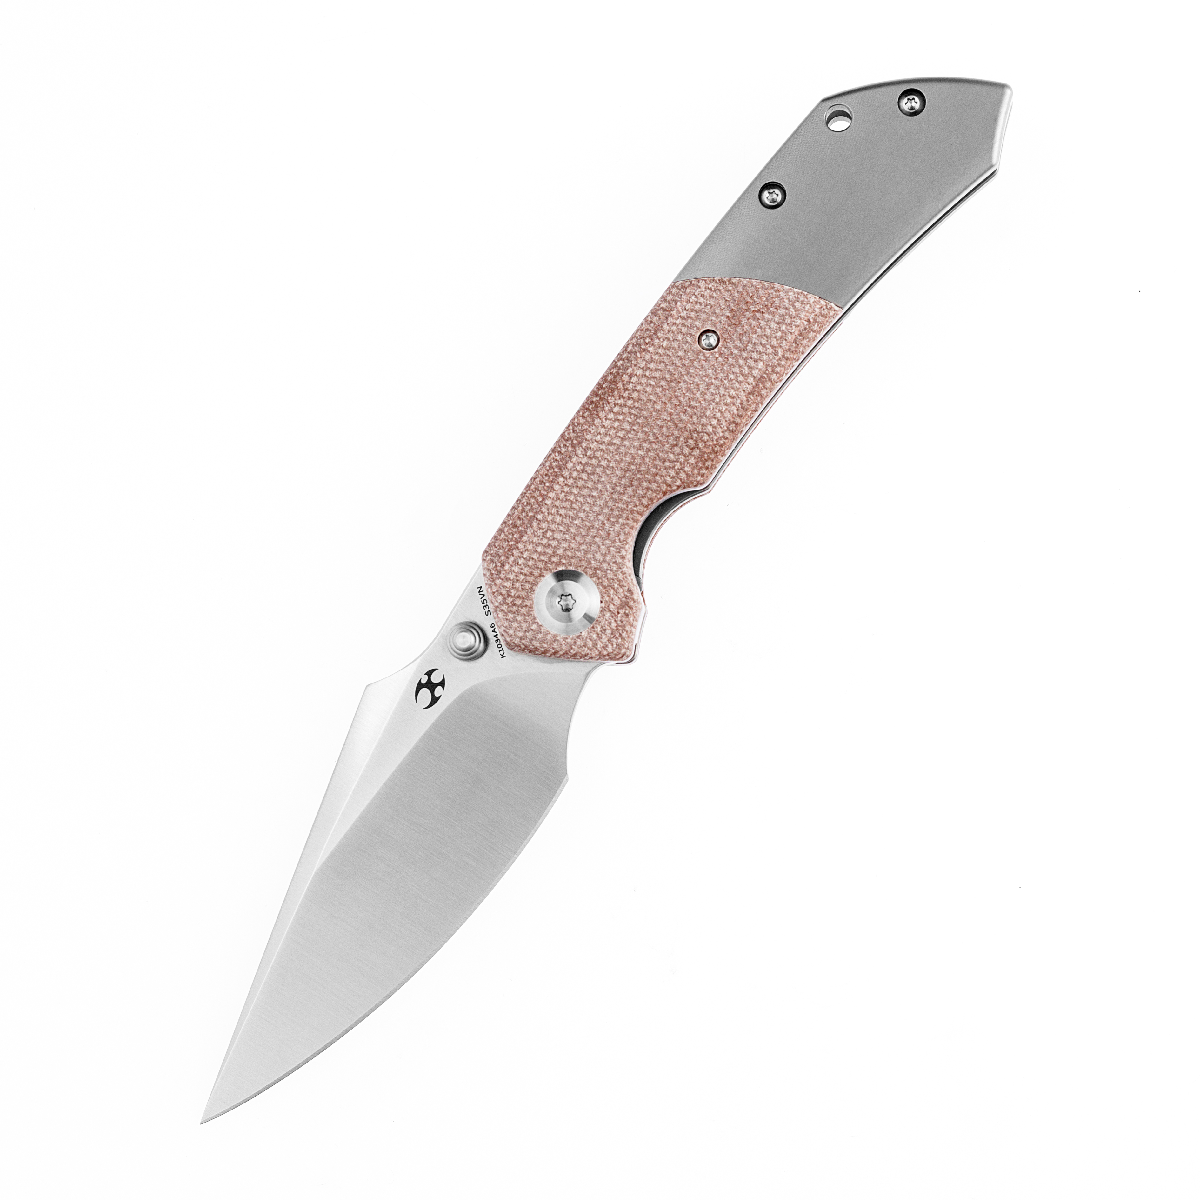 Kansept Fenrir K1034A6 Flipper Knife CPM-S35VN Blade Micarta Titanium Handle